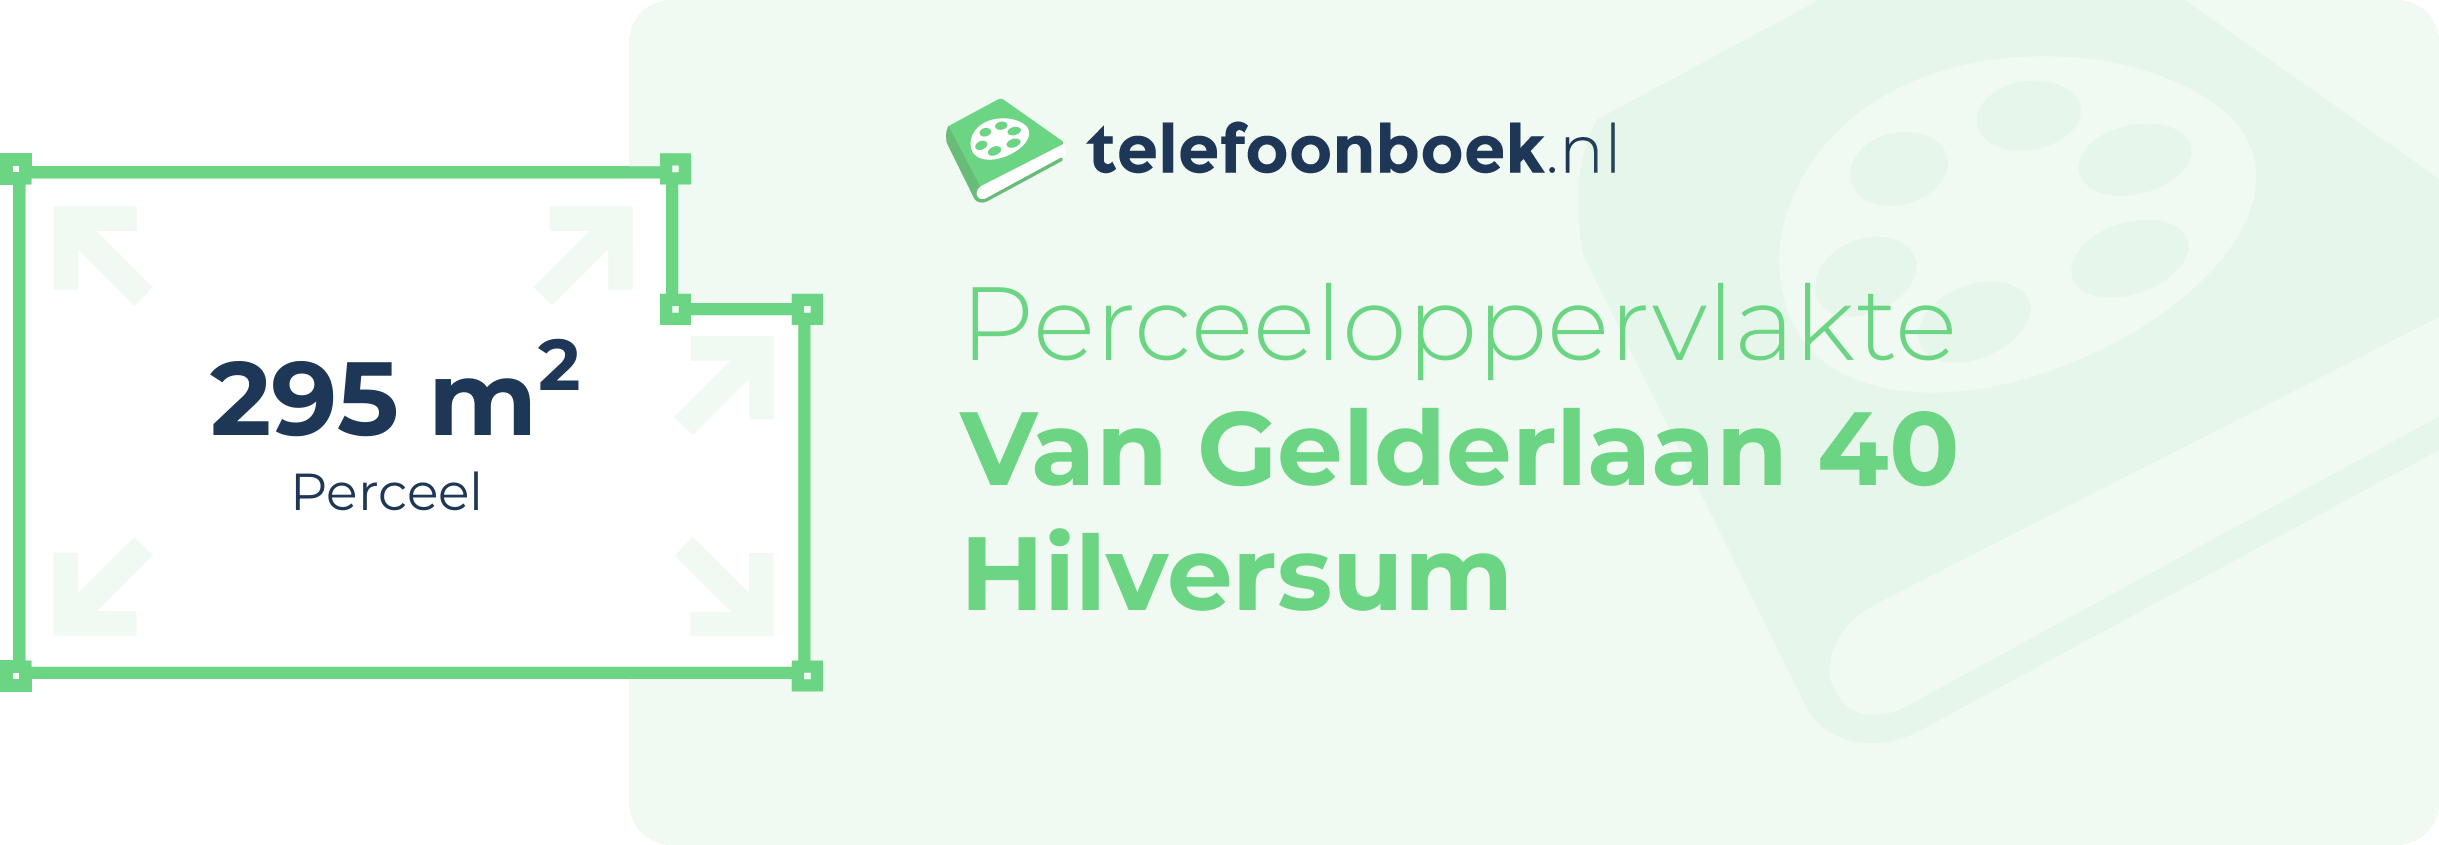 Perceeloppervlakte Van Gelderlaan 40 Hilversum